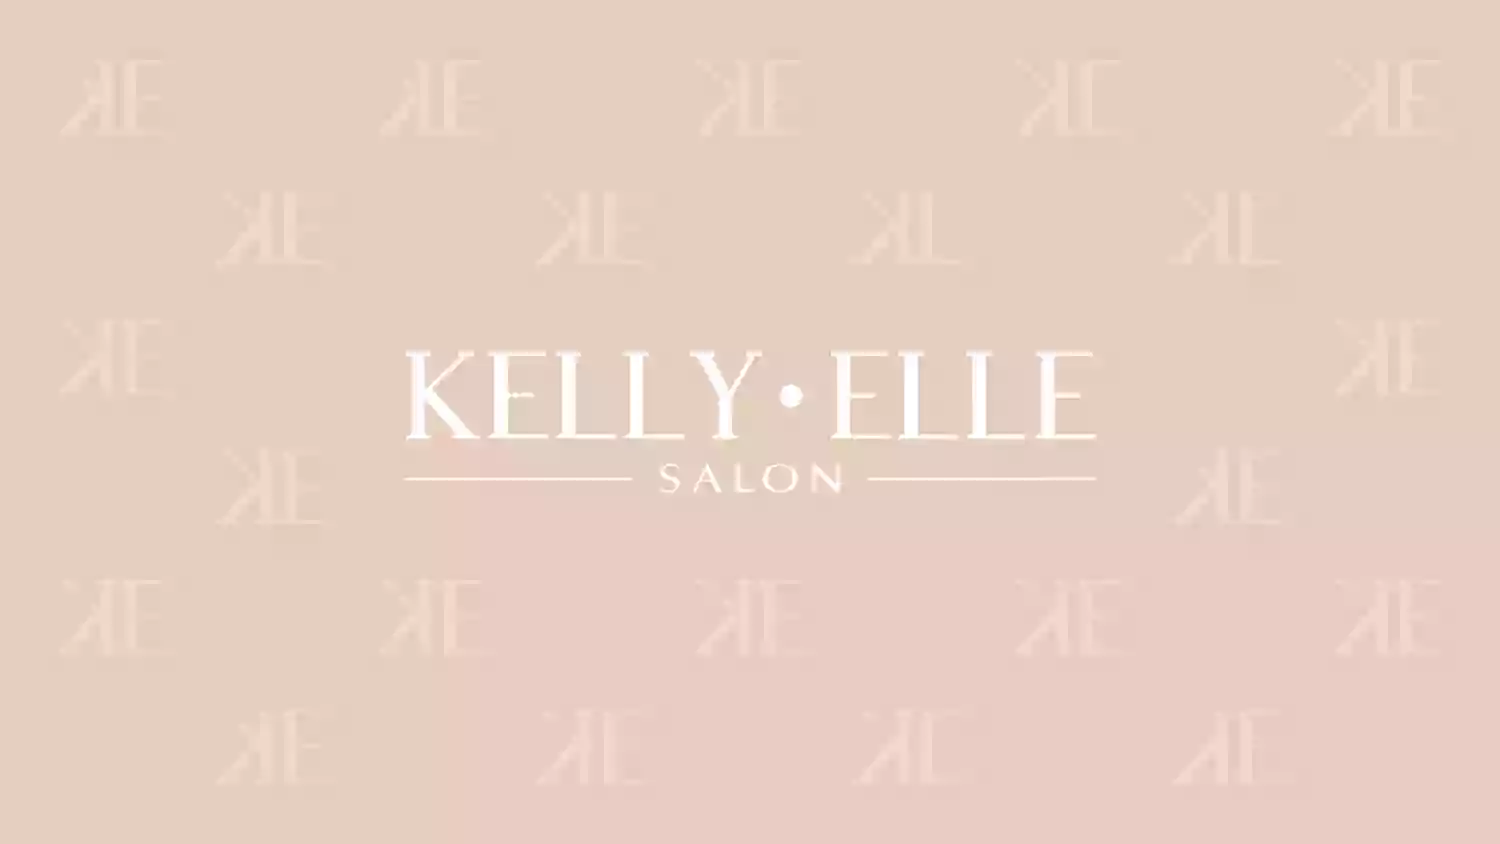 Kelly Elle Salon